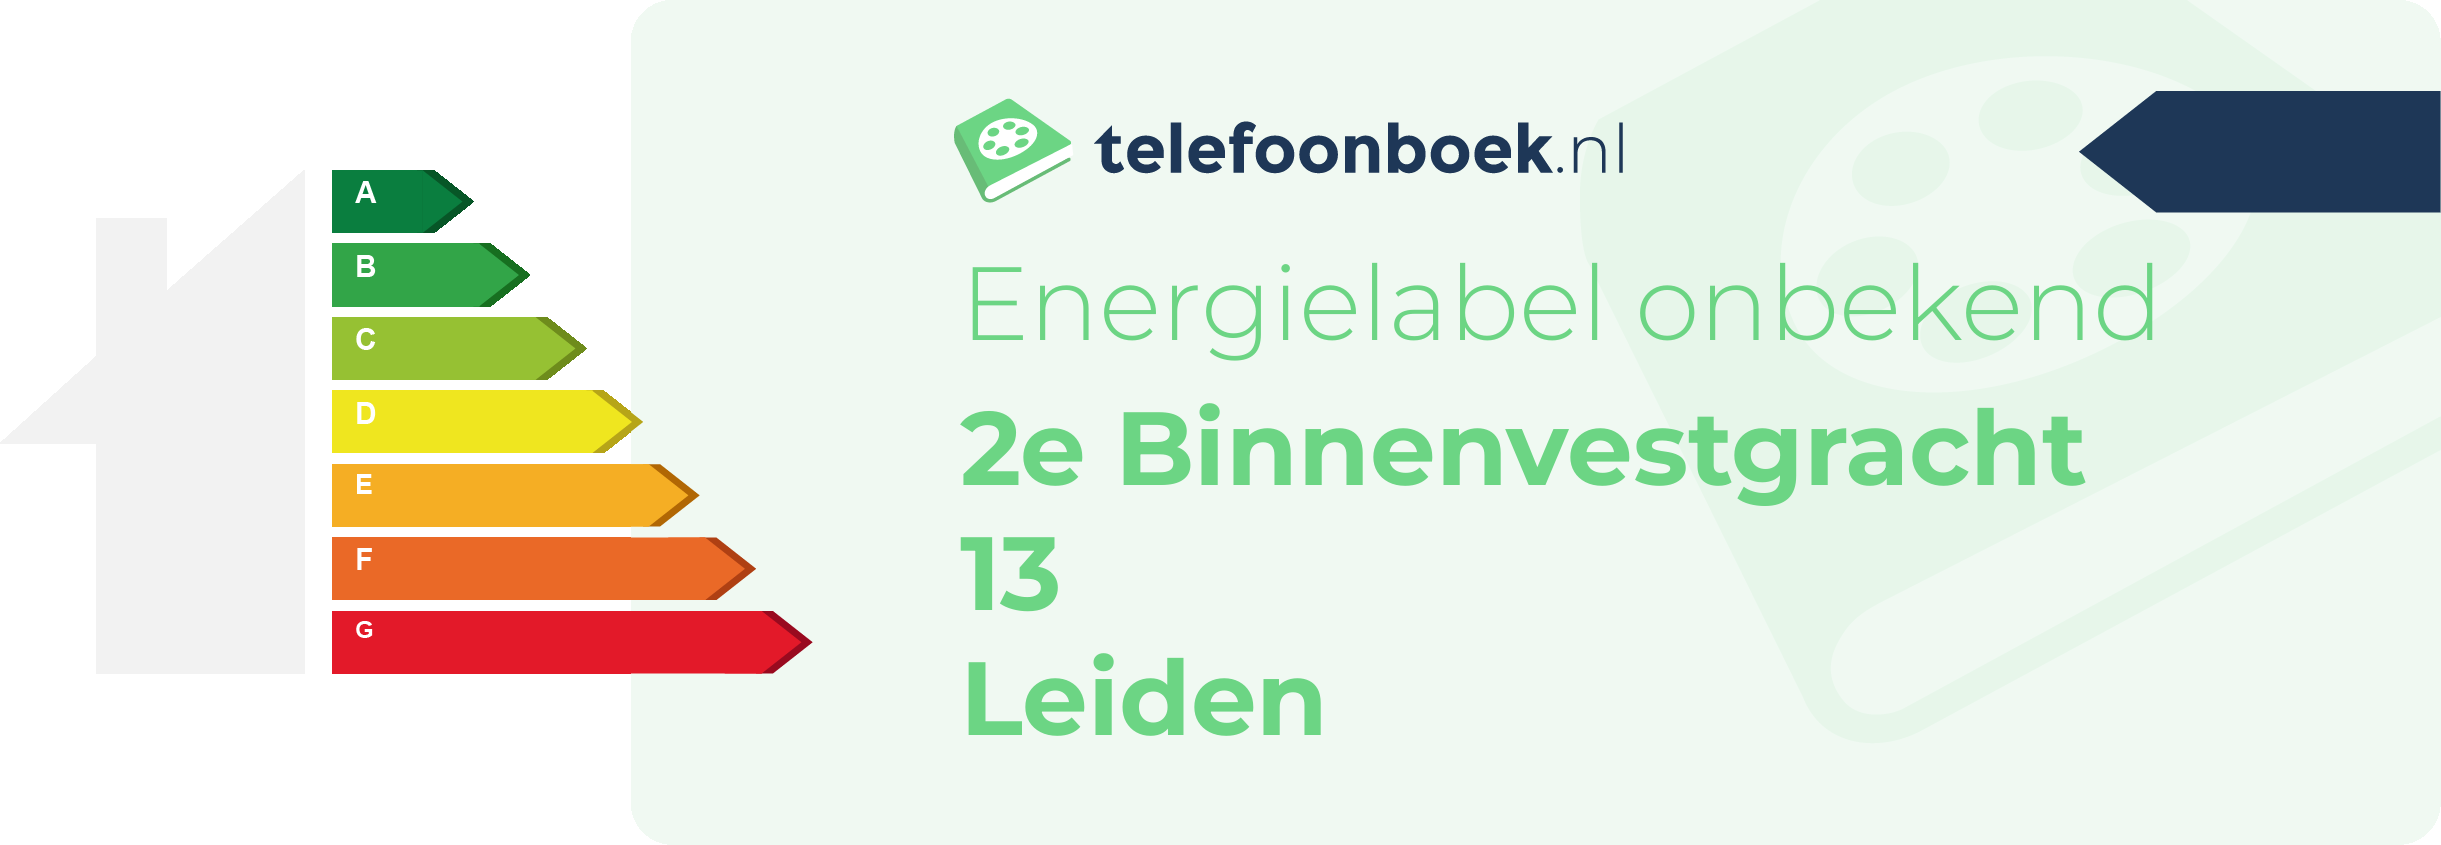 Energielabel 2e Binnenvestgracht 13 Leiden